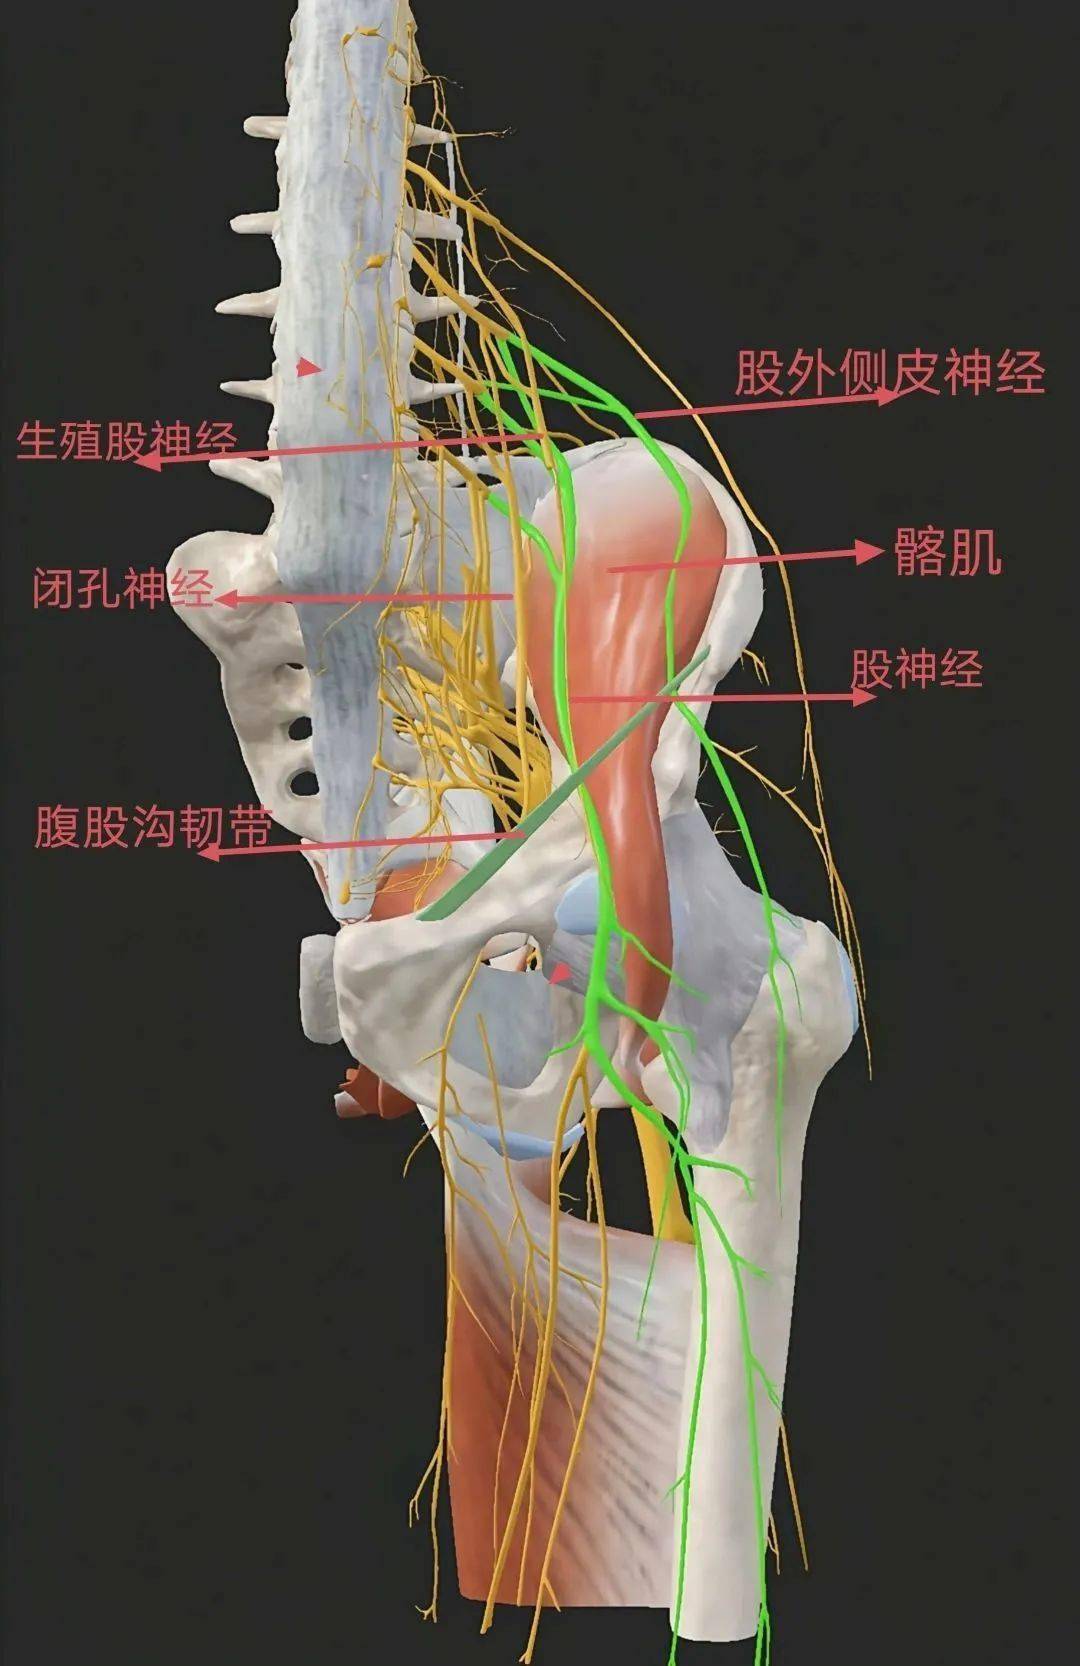 首先,从解剖关系来看,闭孔神经位于耻骨肌深面,而髂筋膜在腹股沟韧带